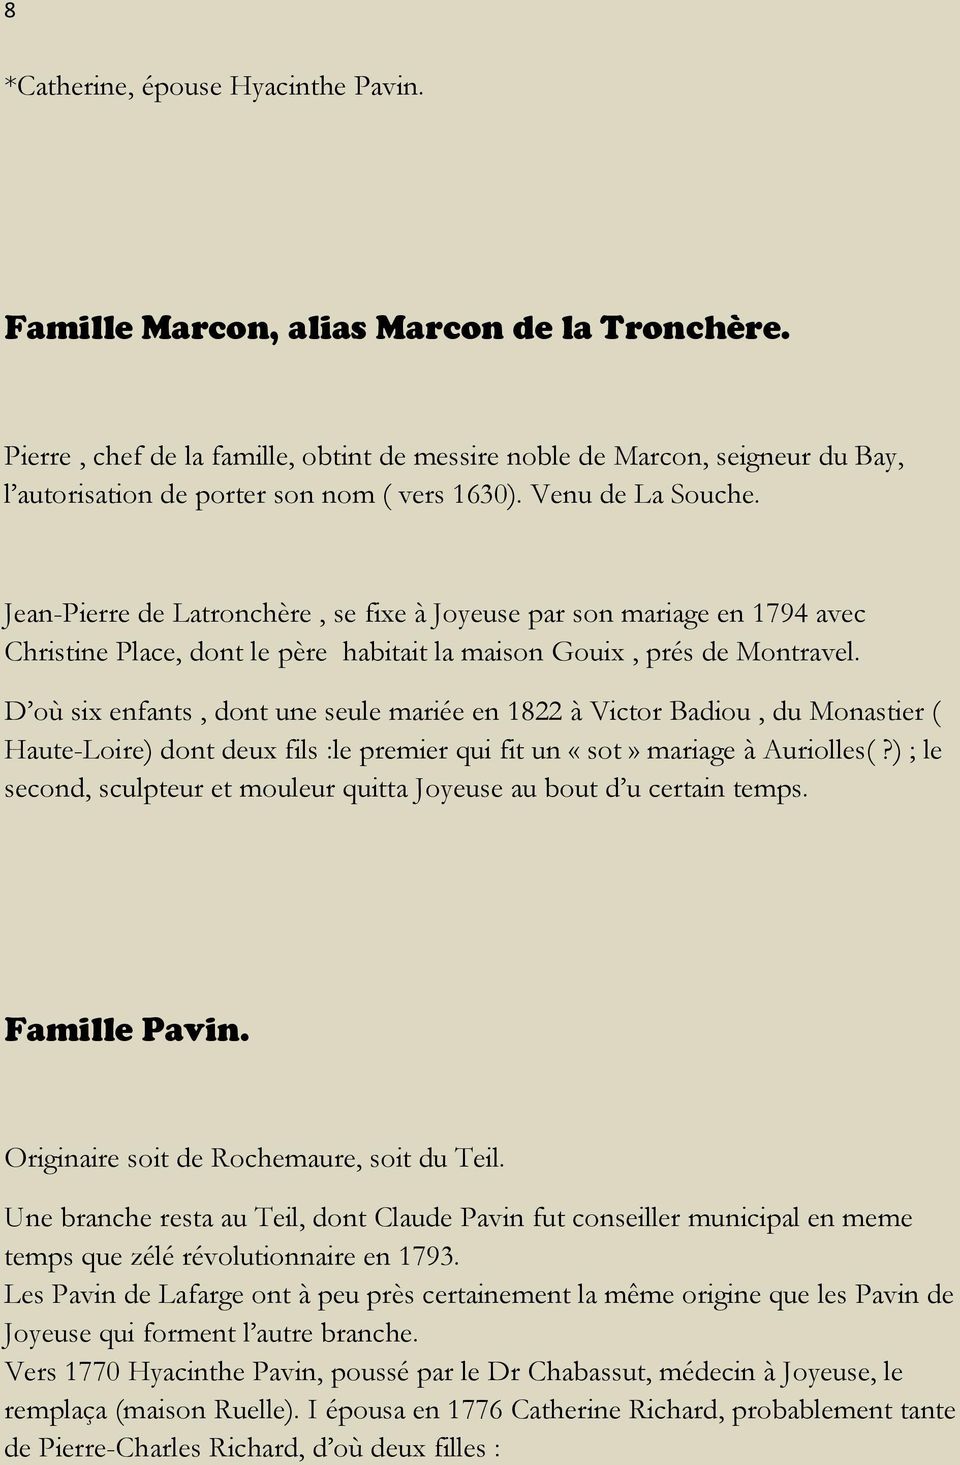 Jean-Pierre de Latronchère, se fixe à Joyeuse par son mariage en 1794 avec Christine Place, dont le père habitait la maison Gouix, prés de Montravel.